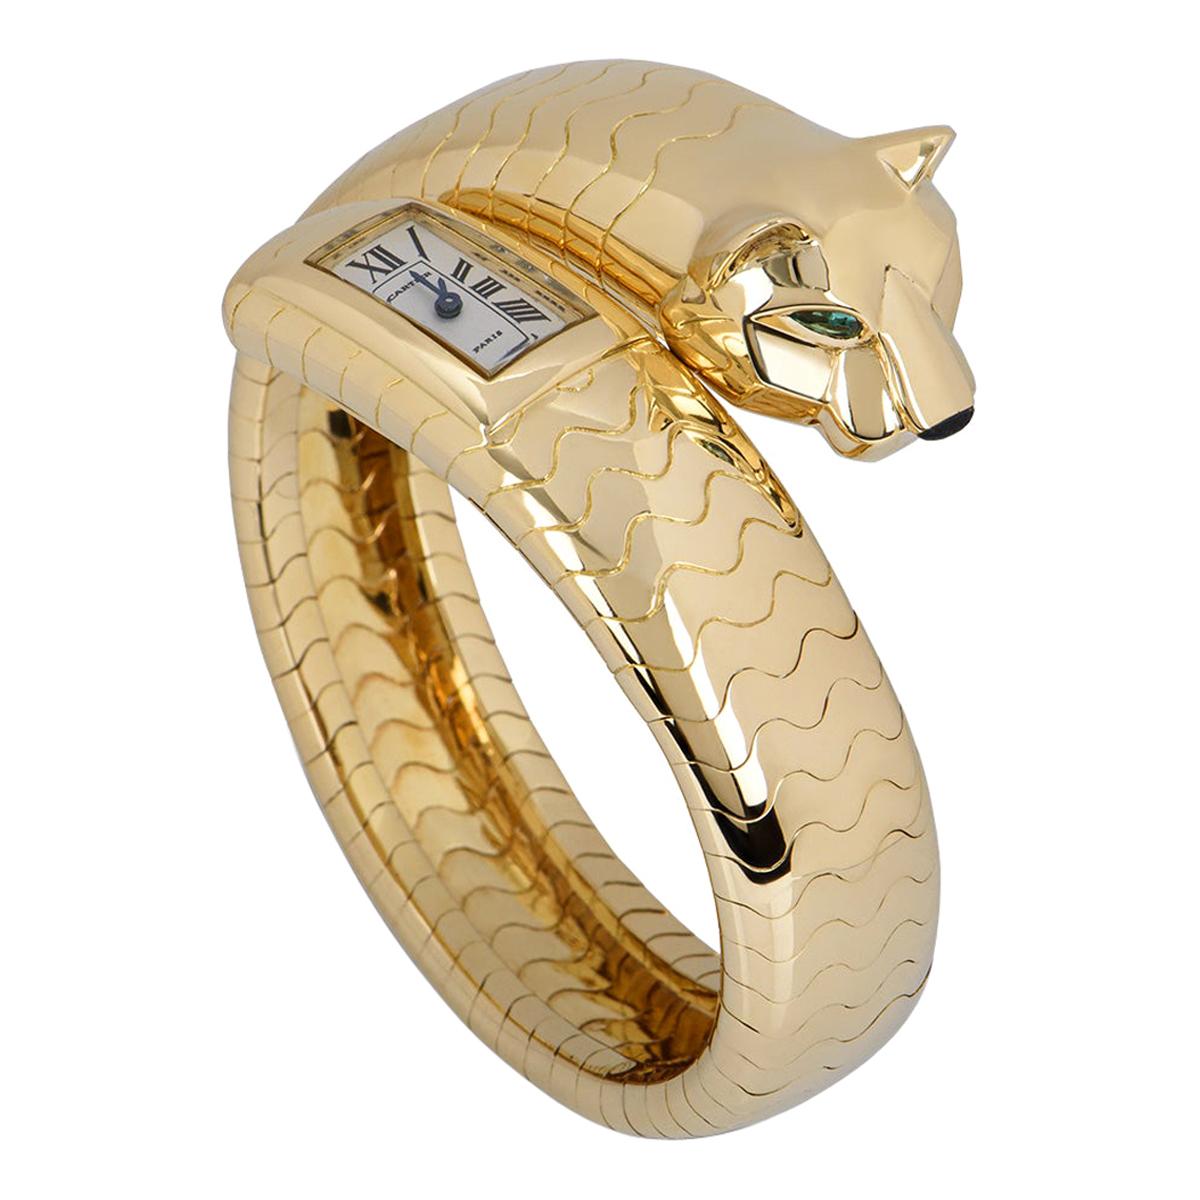 Rare Cartier Panthere Figurative Lakarda Yellow Gold Emerald & Onyx Set Watch